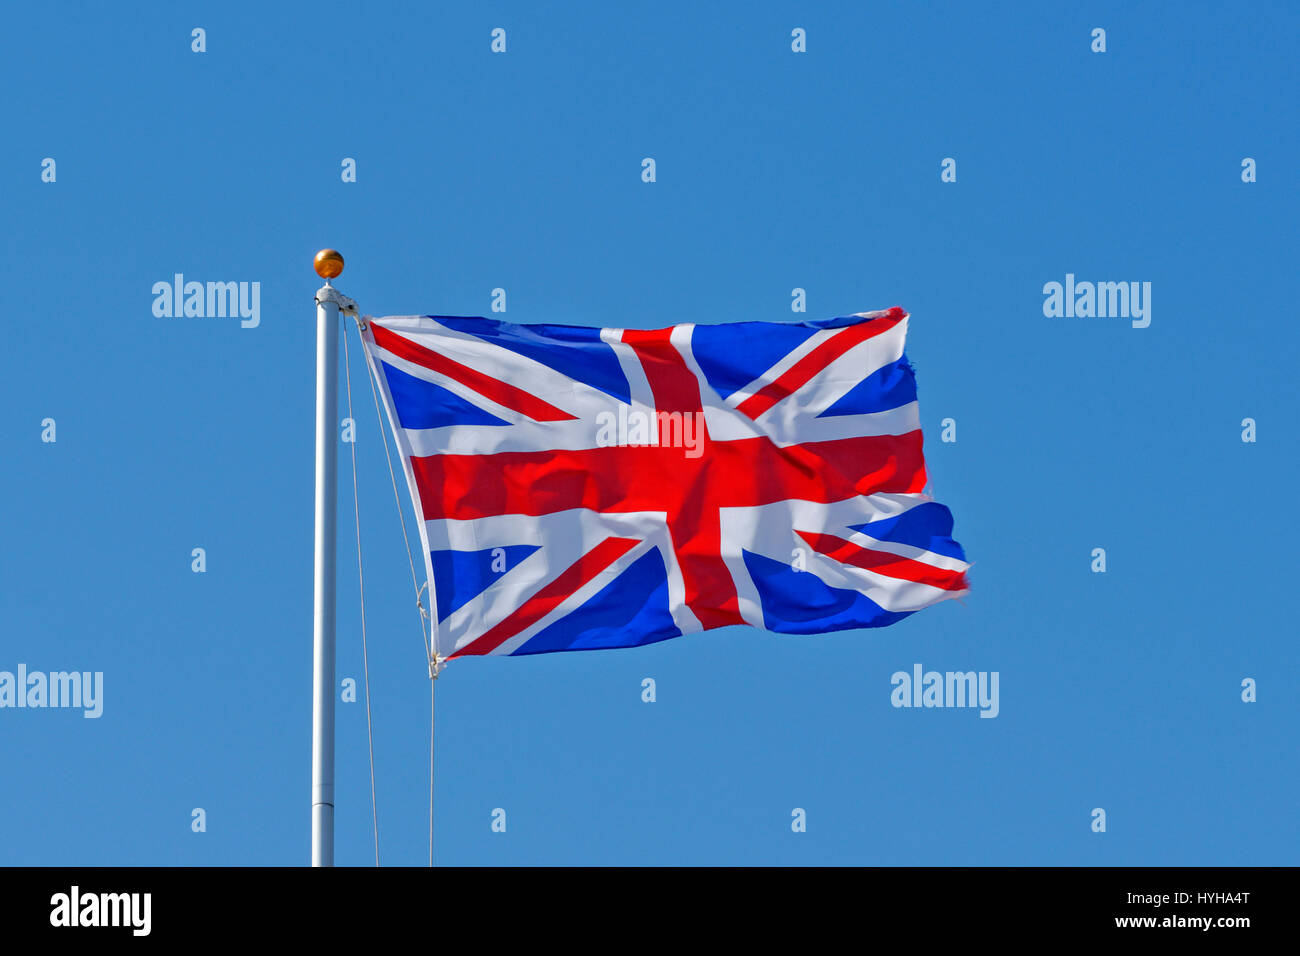 La Union Jack, o Unión Bandera, es la bandera nacional del Reino Unido. Foto de stock